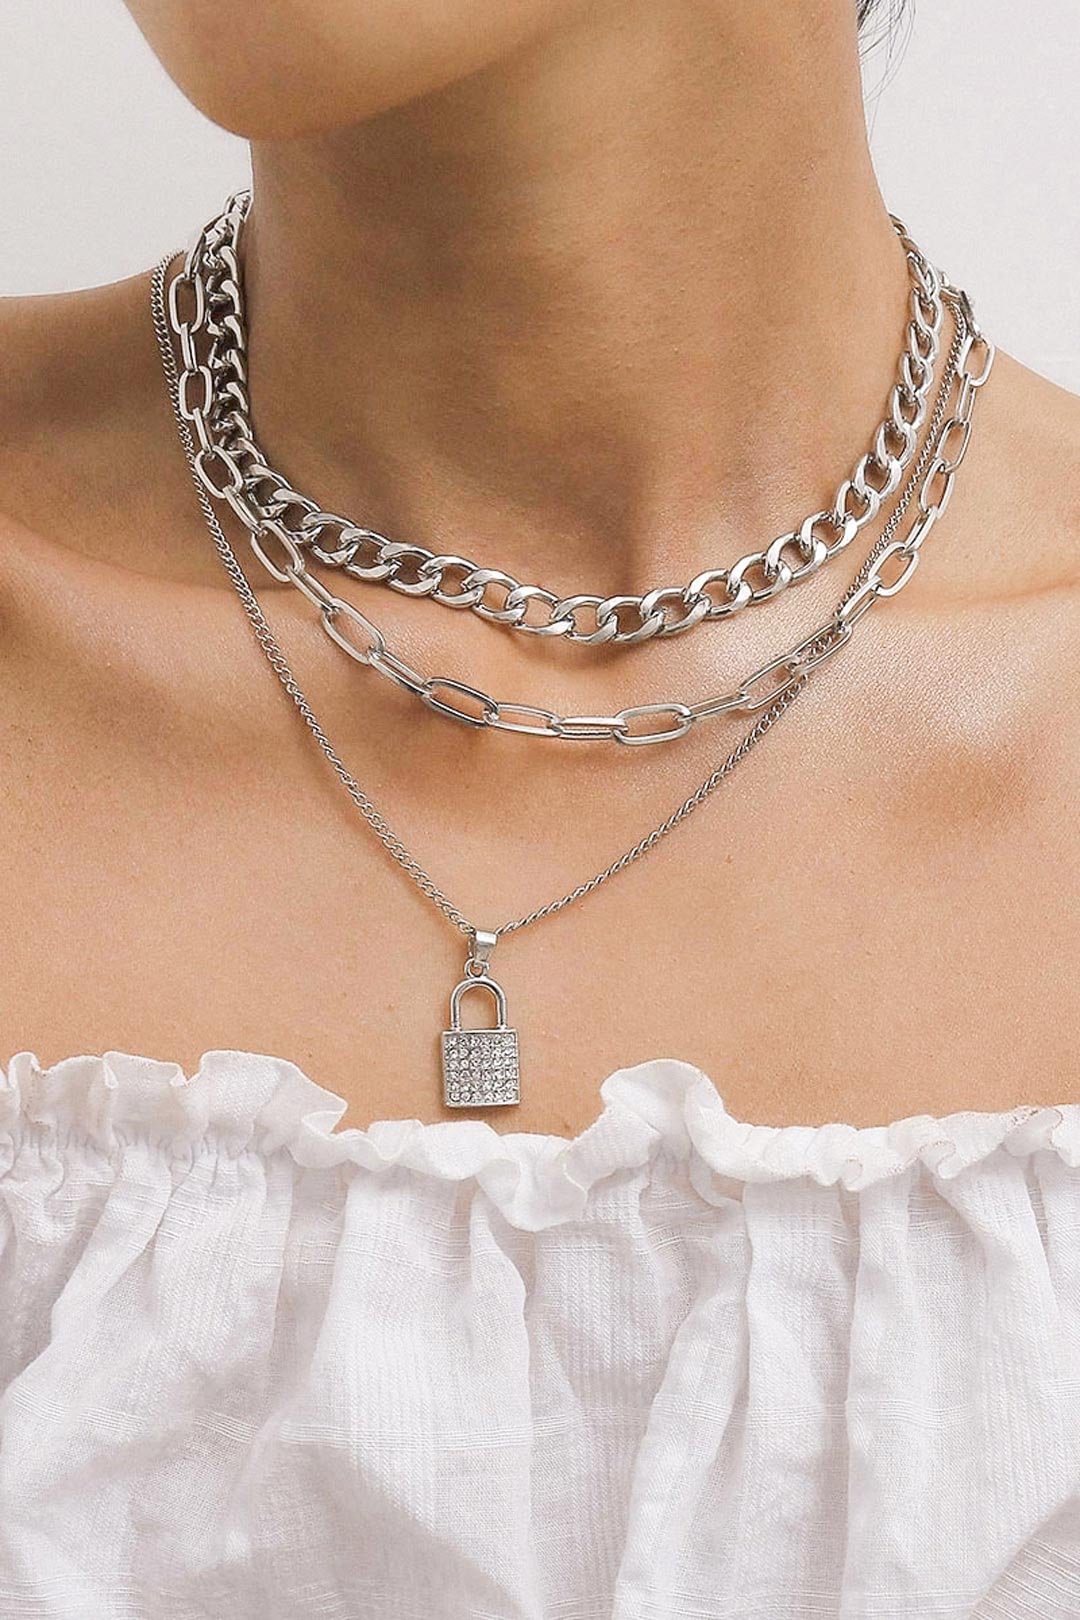 Fashionv-Micro Diamond Lock Temperament Necklace